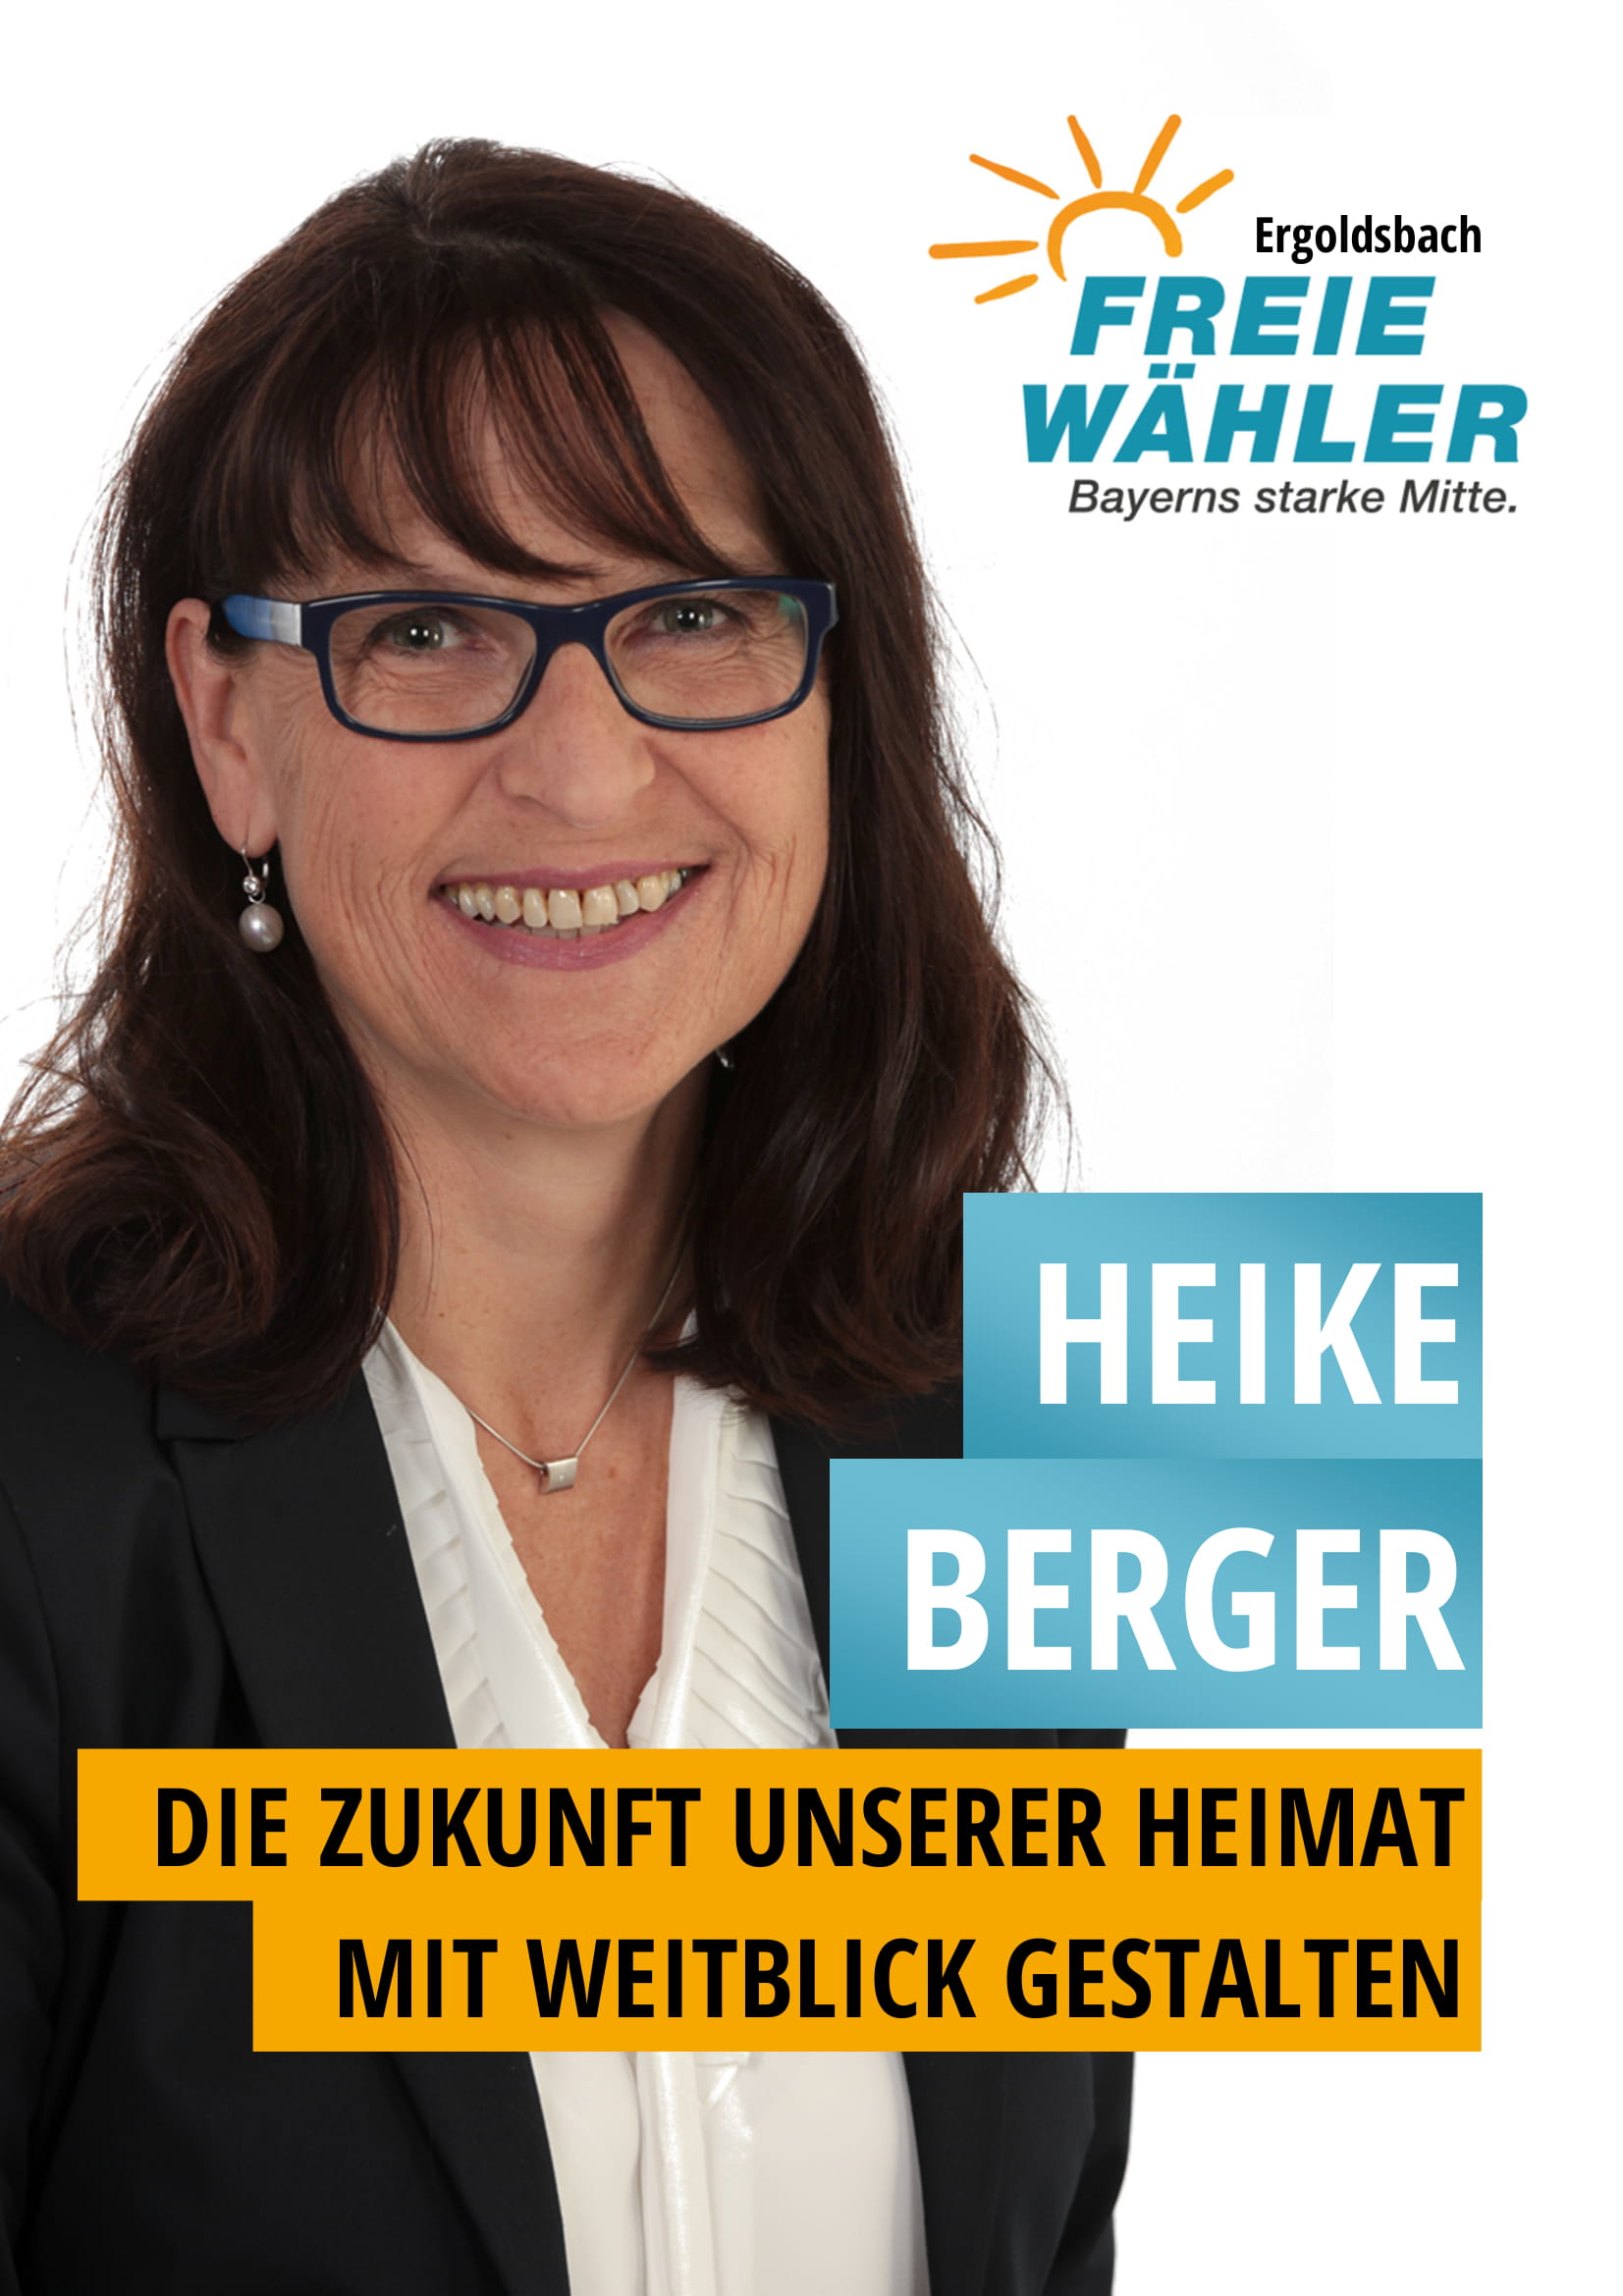 Heike Berger